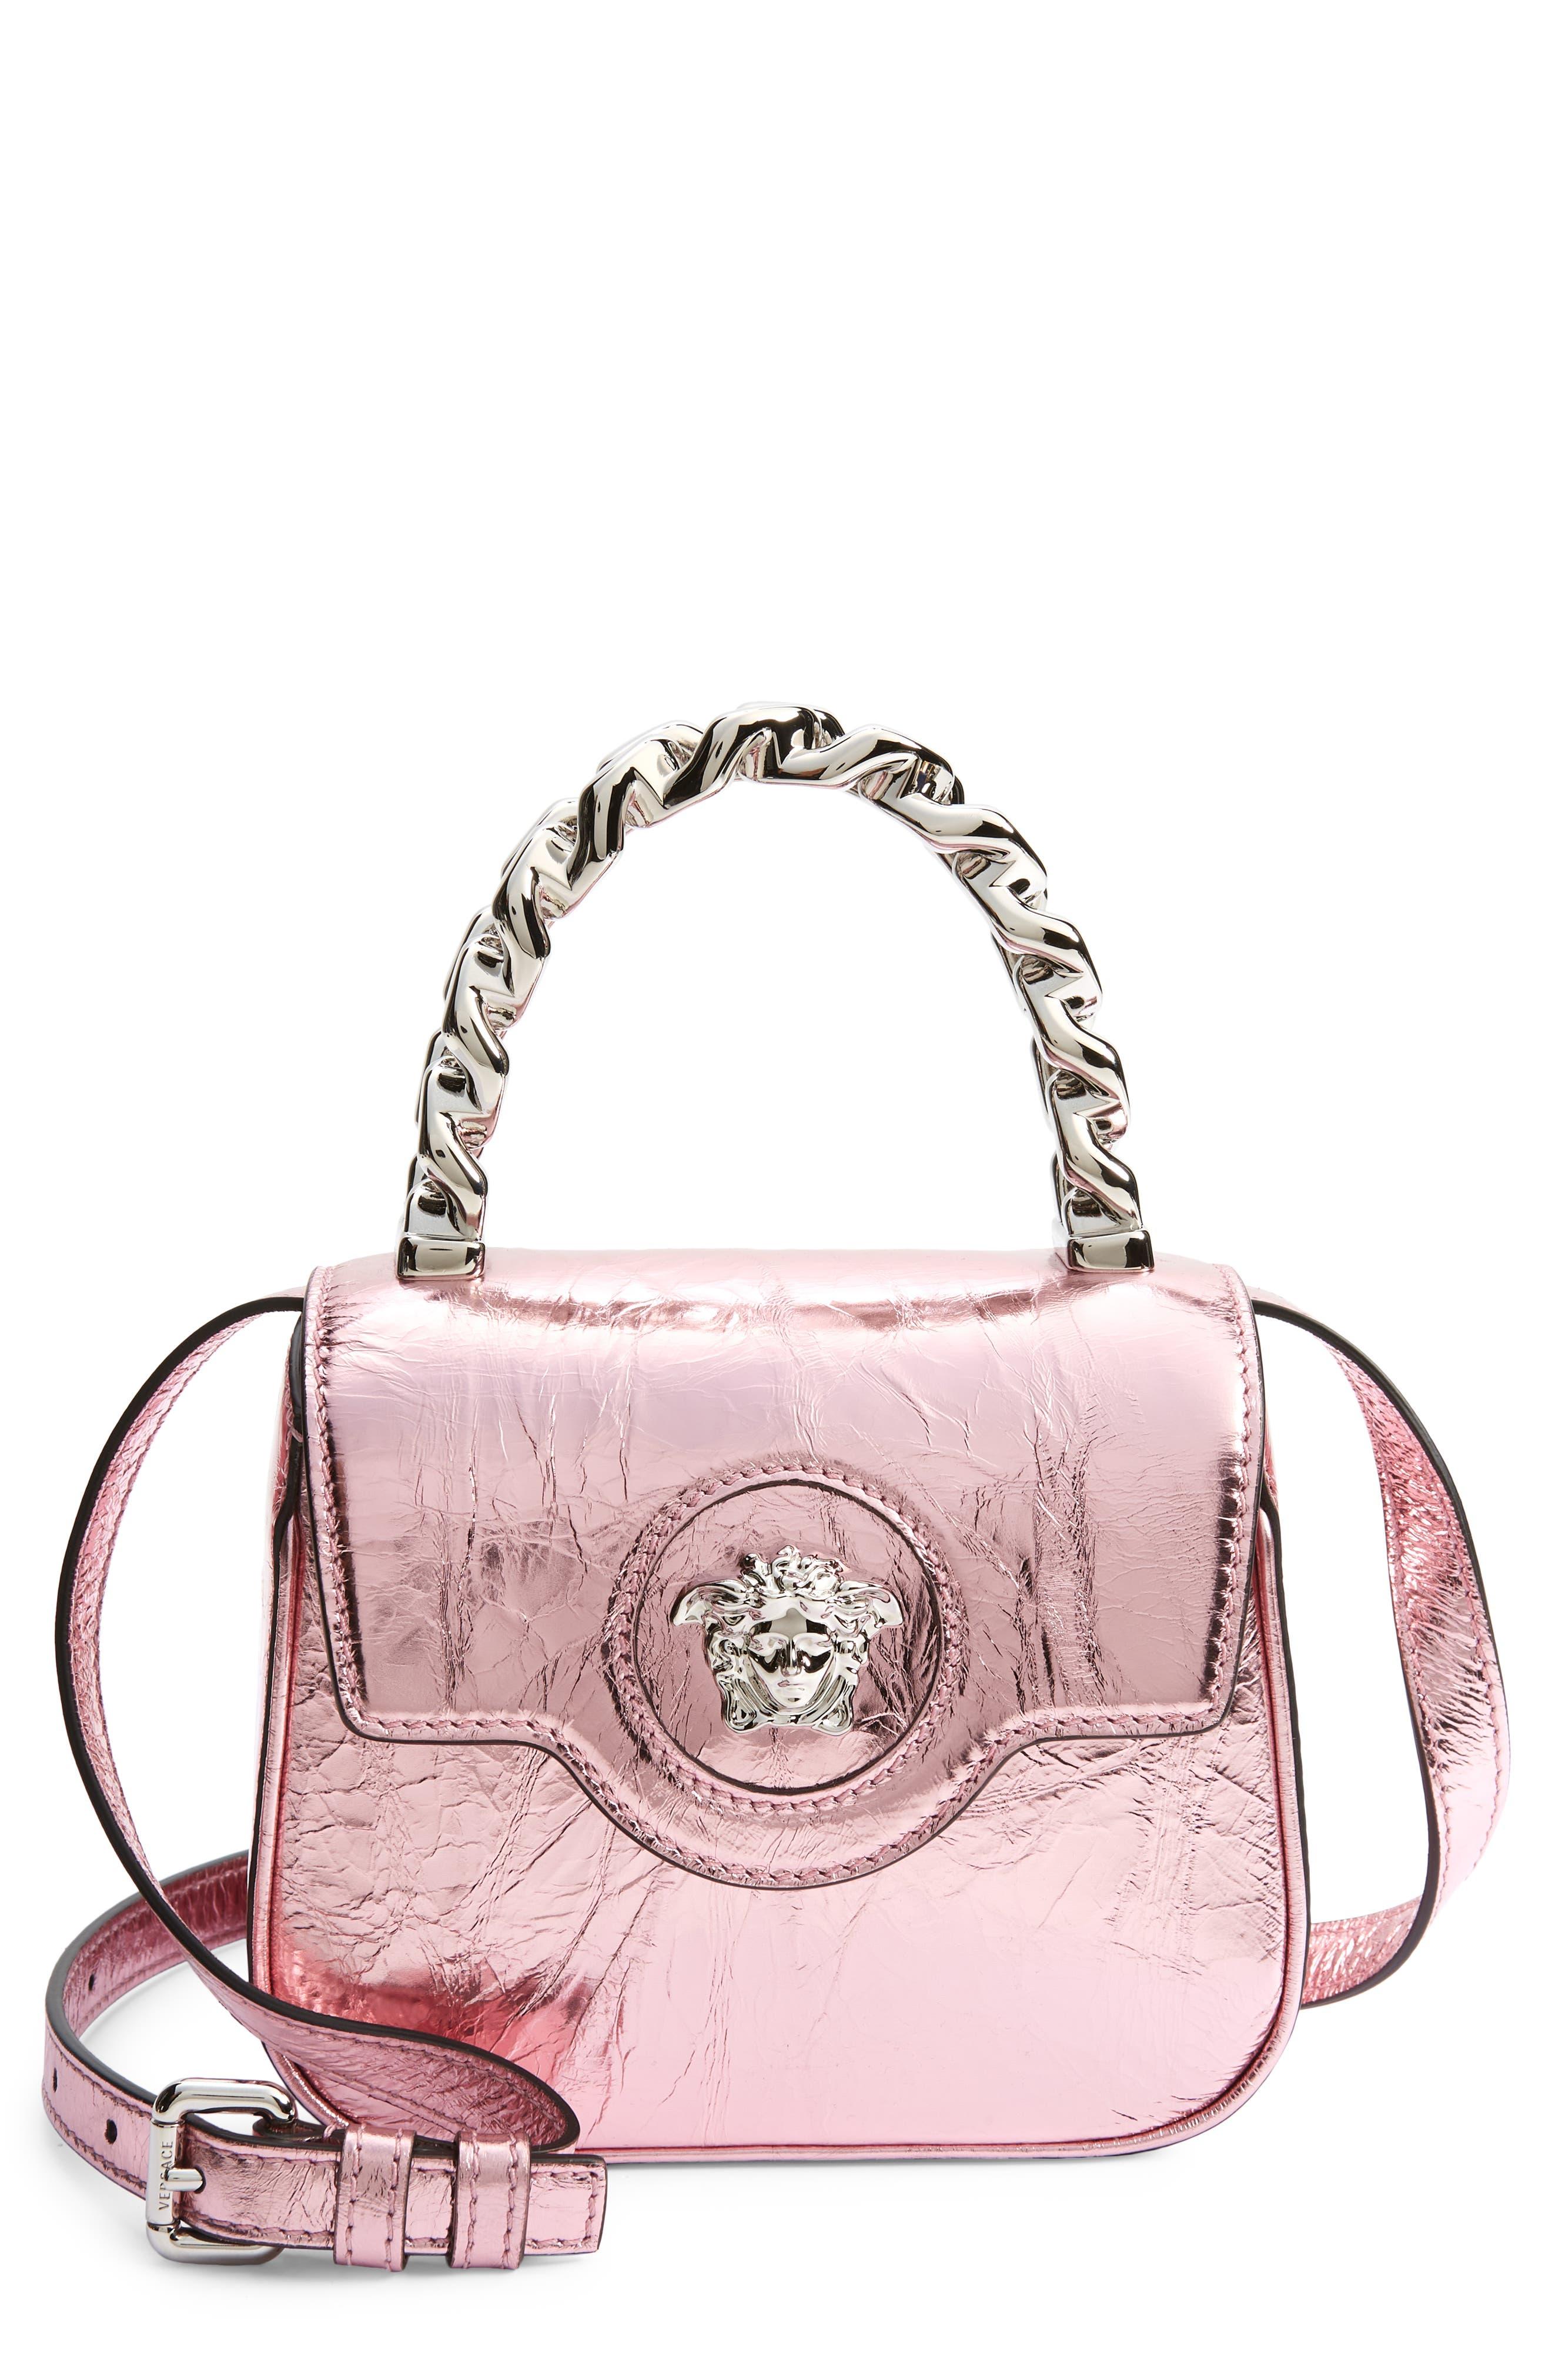 La Medusa Mini Embellished Tote Bag in Pink - Versace